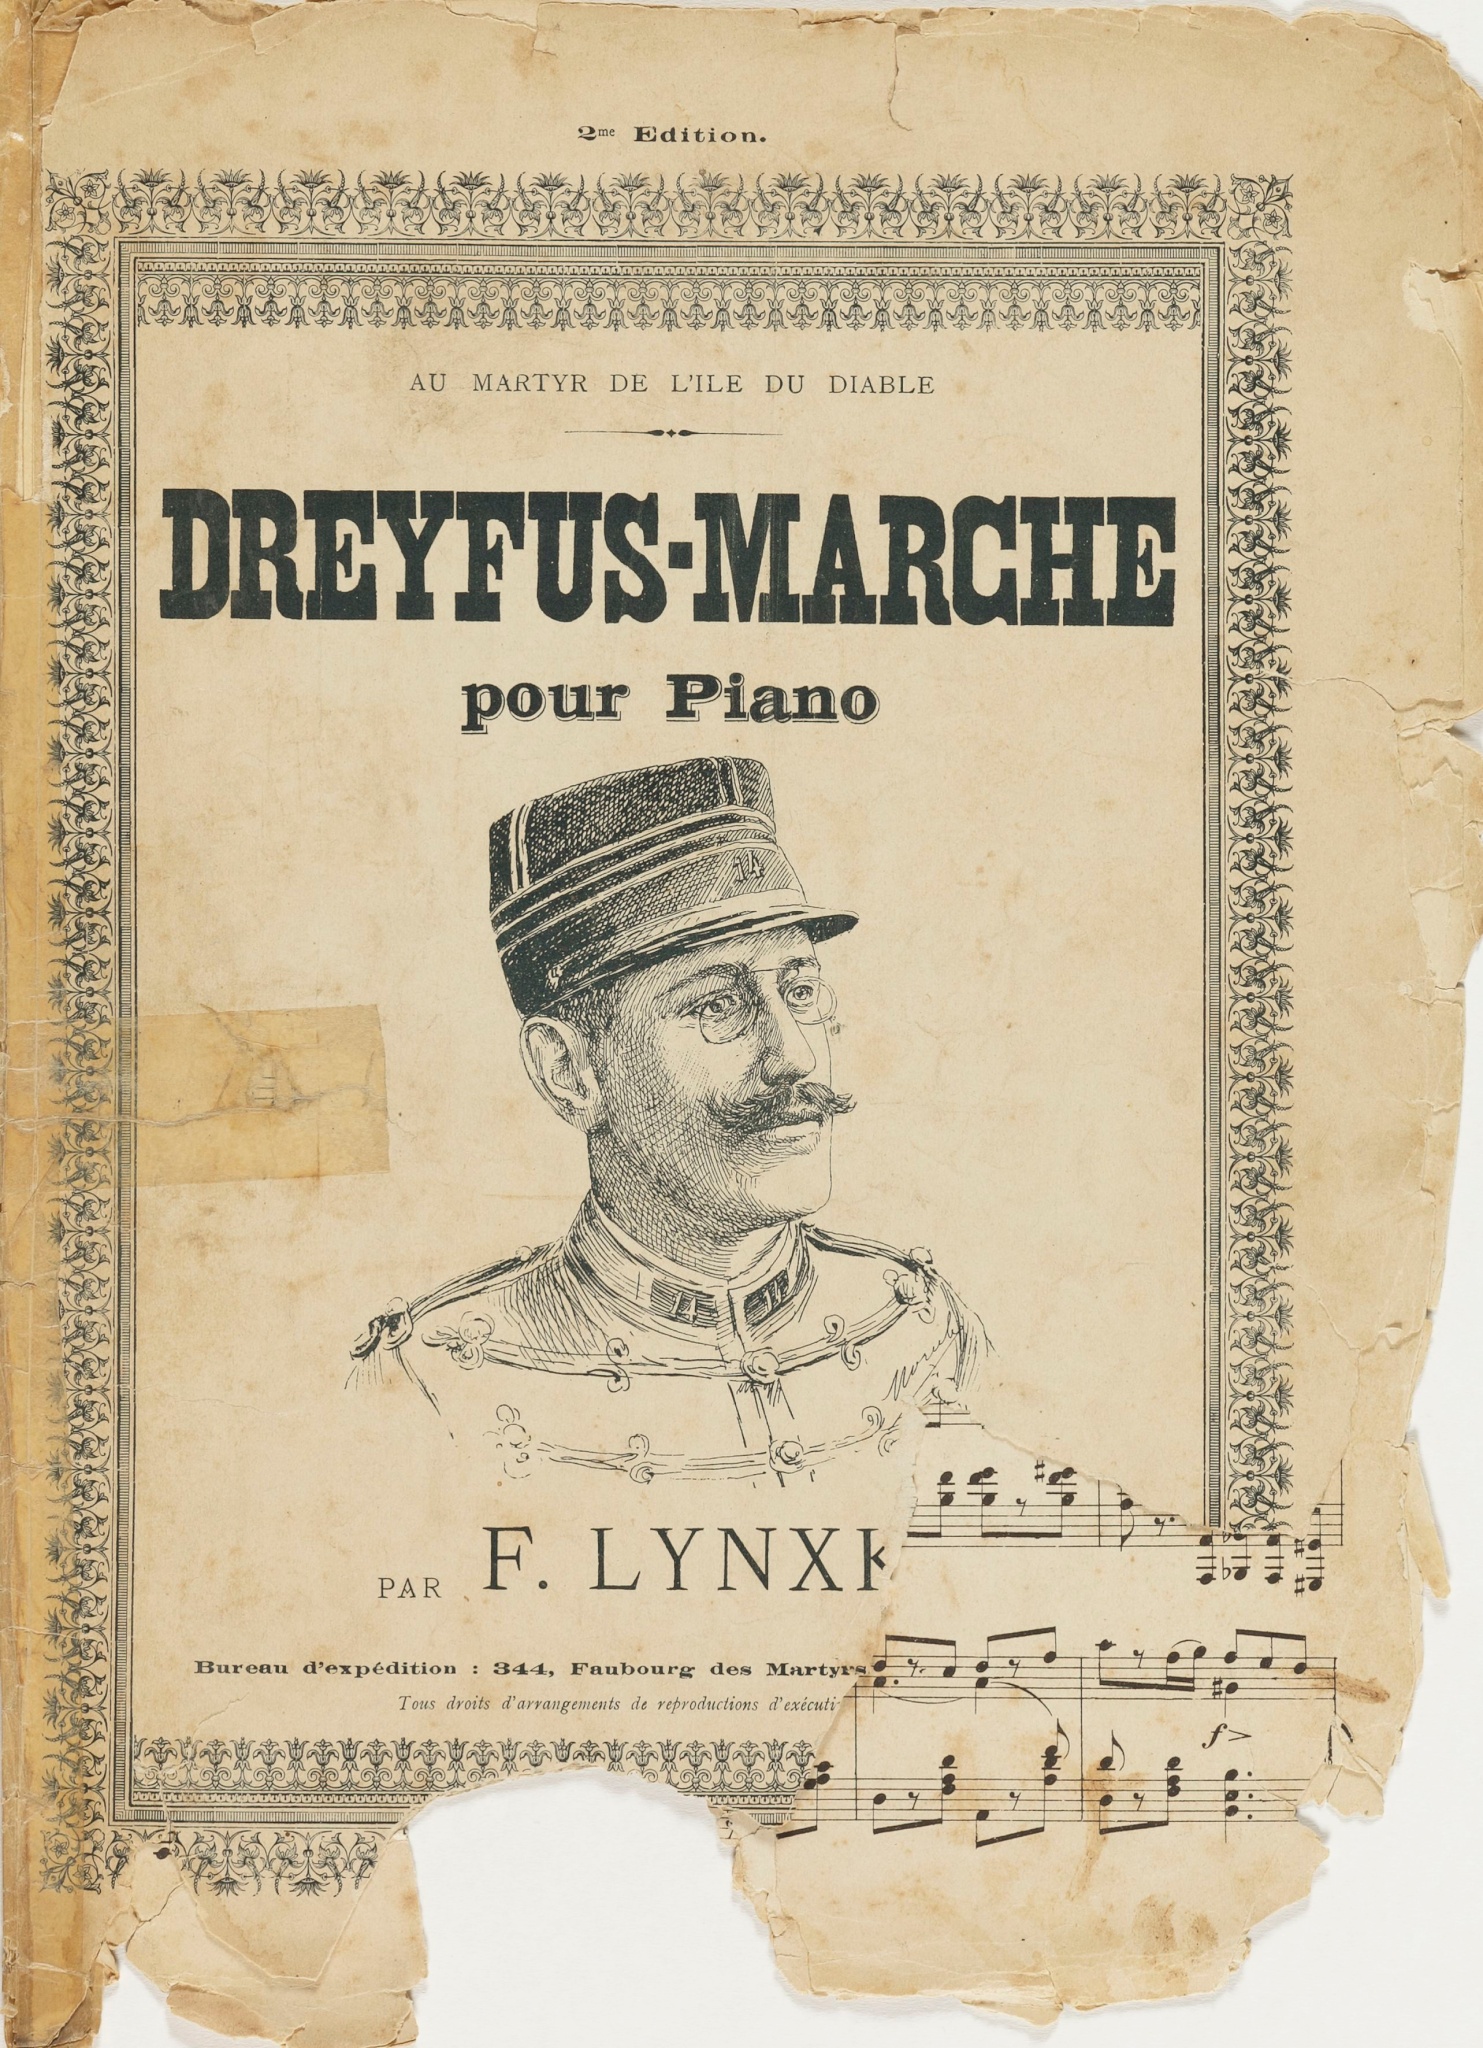 Dreyfus-Marche pour piano